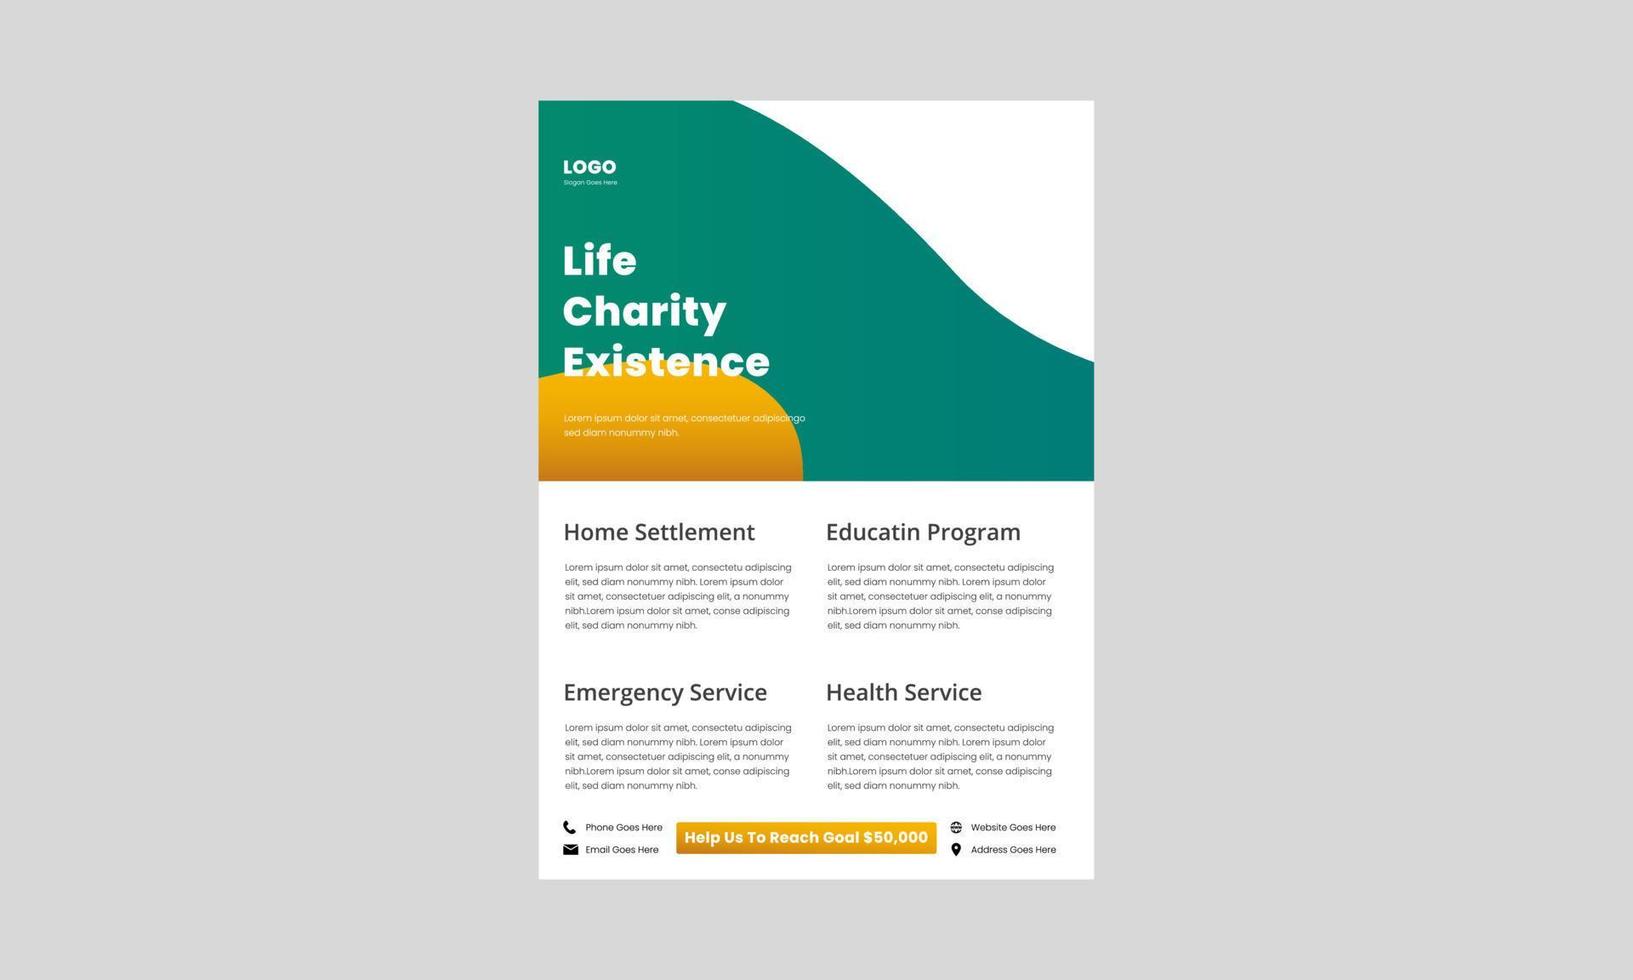 Wohltätigkeitsspende hilft der armen Flyer-Designvorlage. Flyer-Design für Spenden für wohltätige Zwecke. Helfen Sie Ihrer Wohltätigkeitsorganisation dabei, Flyer, Poster und Broschüren zu entwerfen. vektor